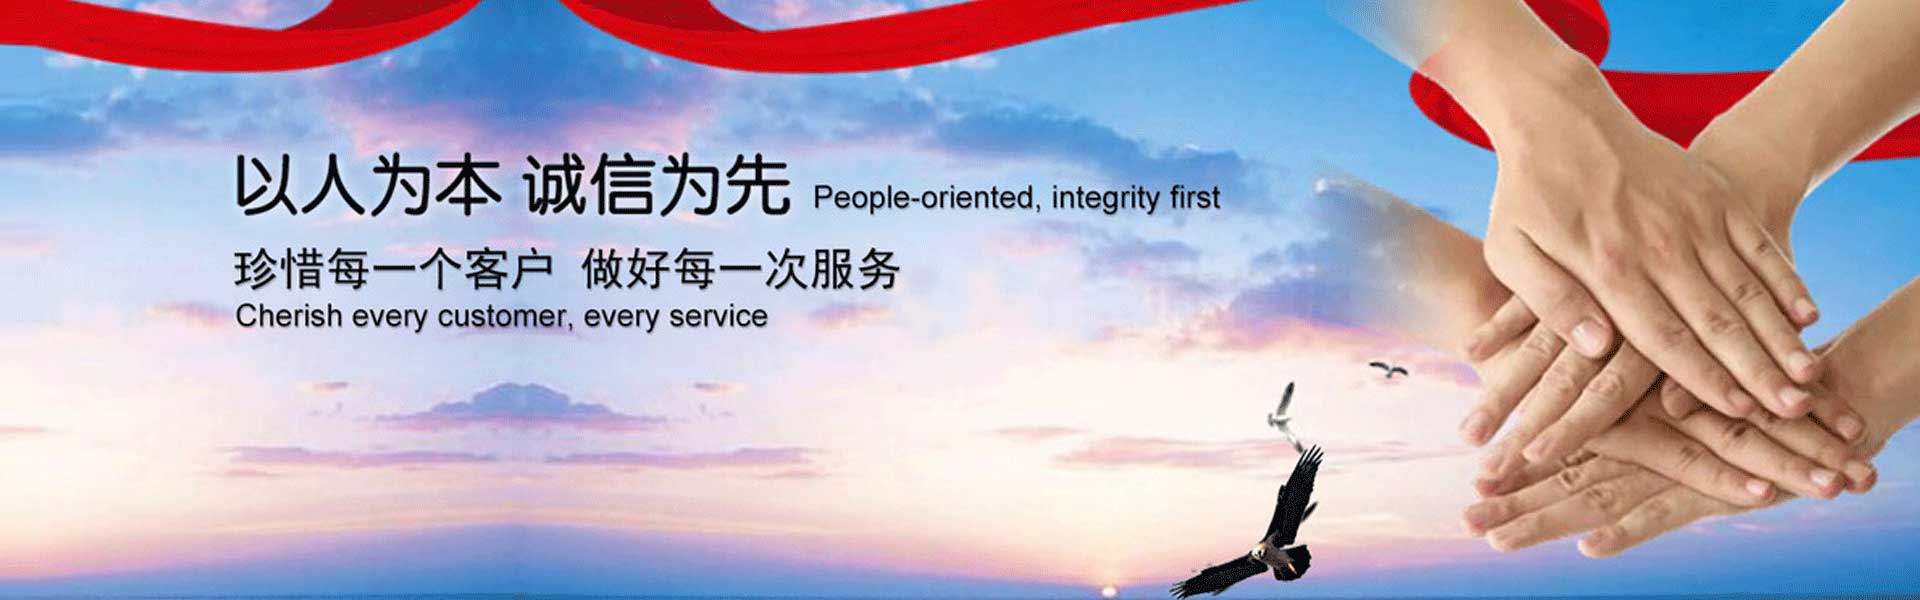 北京商标注册服务机构是北京地区的商标注册平台,专注为个人和企业提供商标注册、商标申请、个体